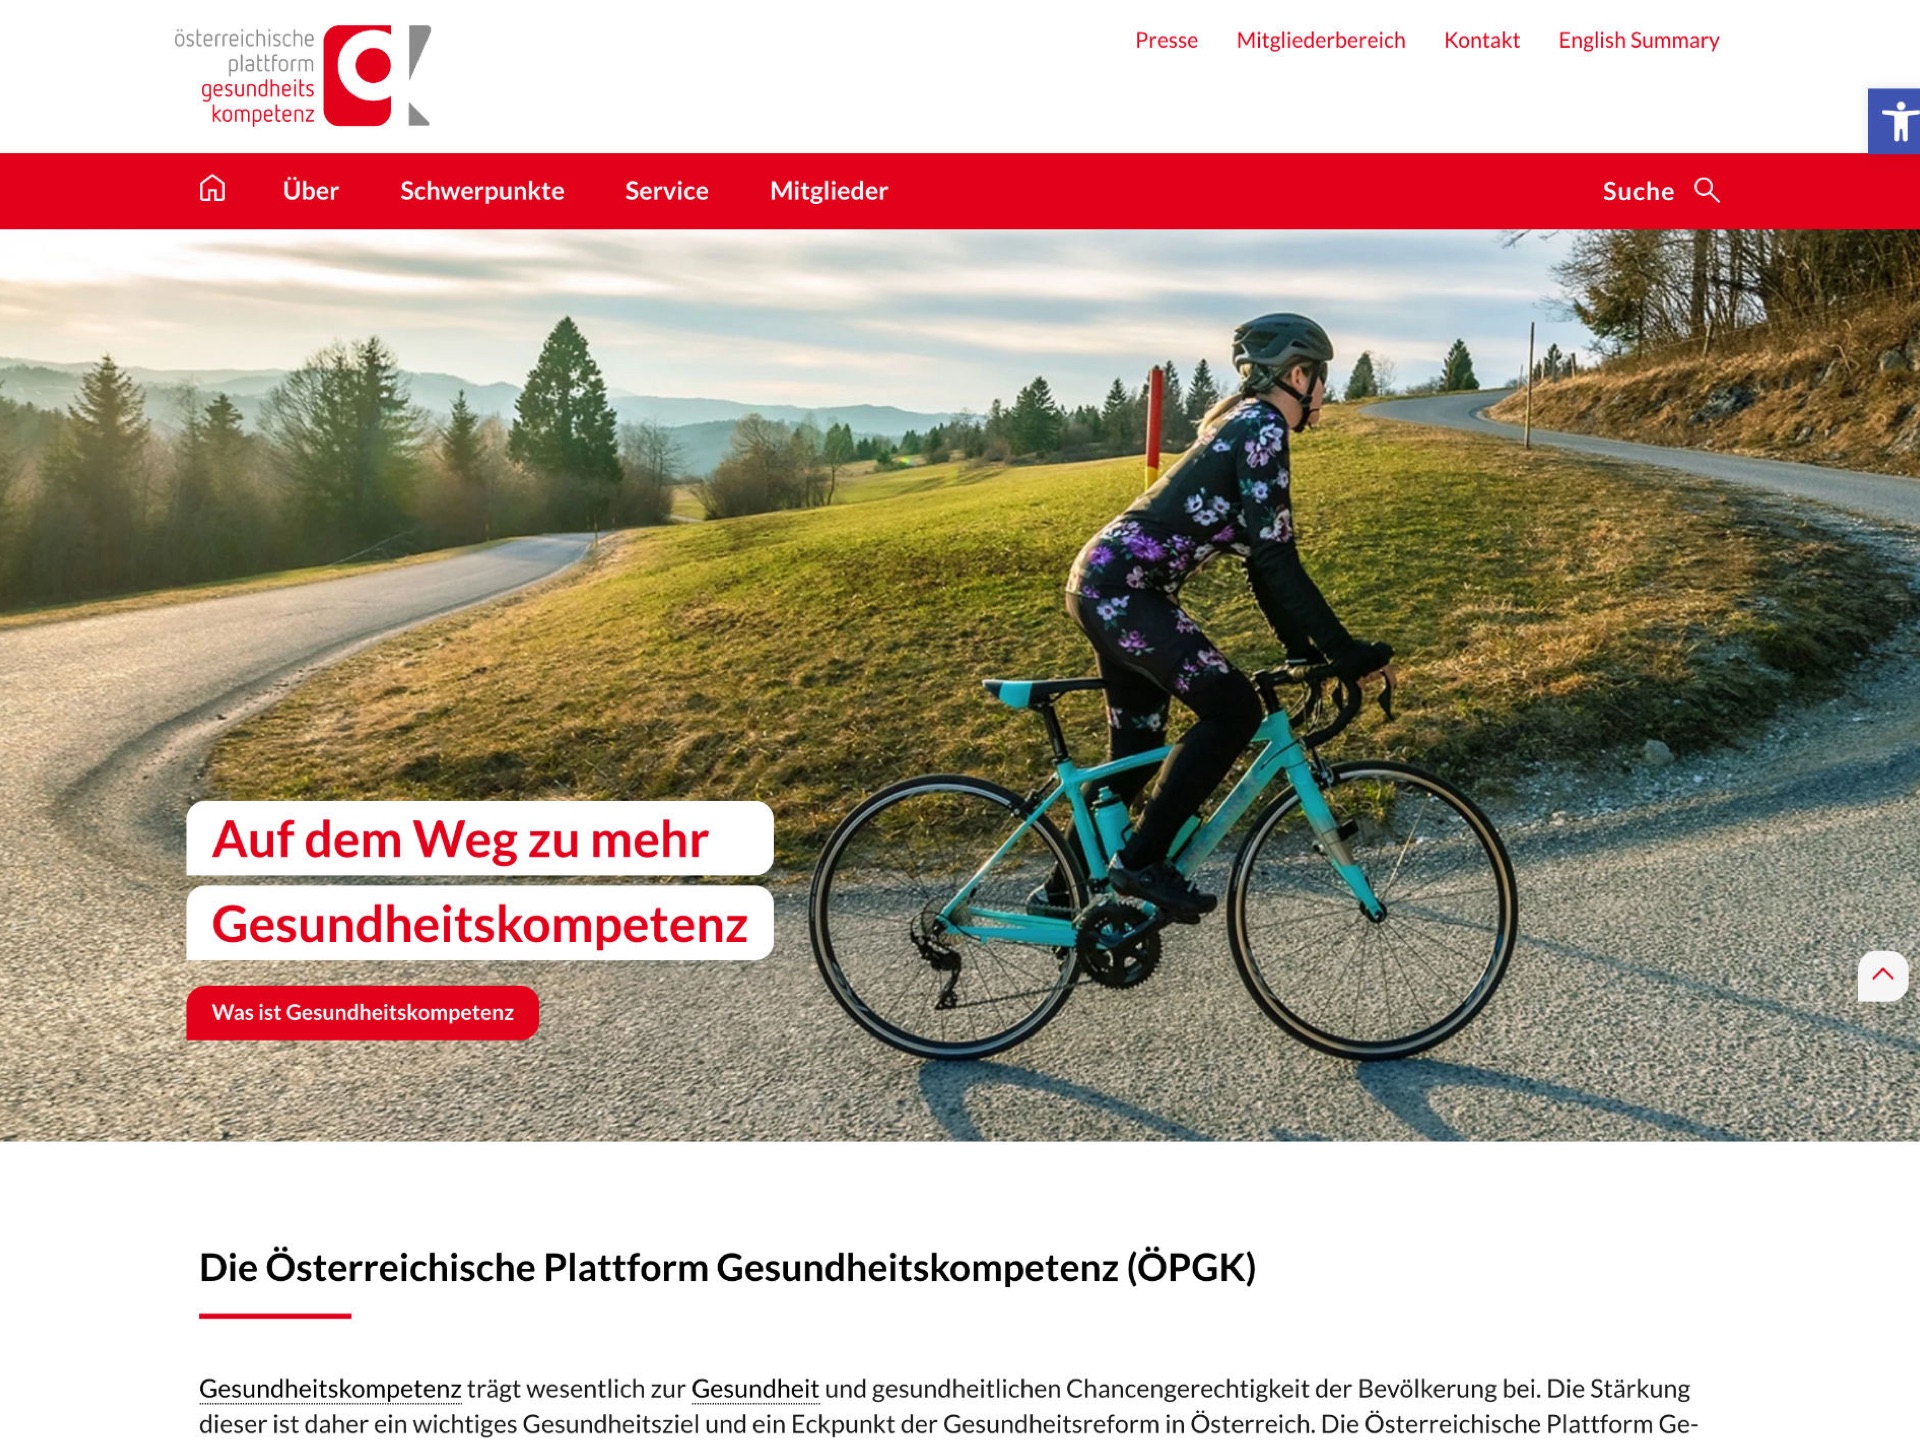 ÖPGK - Österreichische Plattform Gesundheitskompetenz - Website